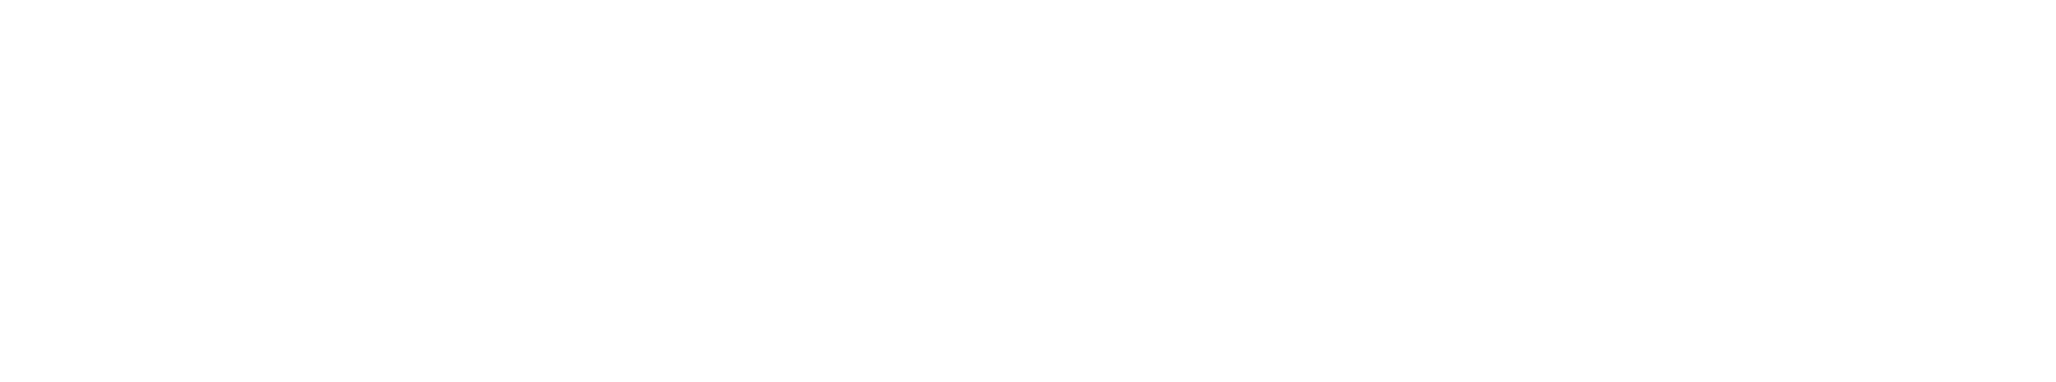 Unique Signatures 